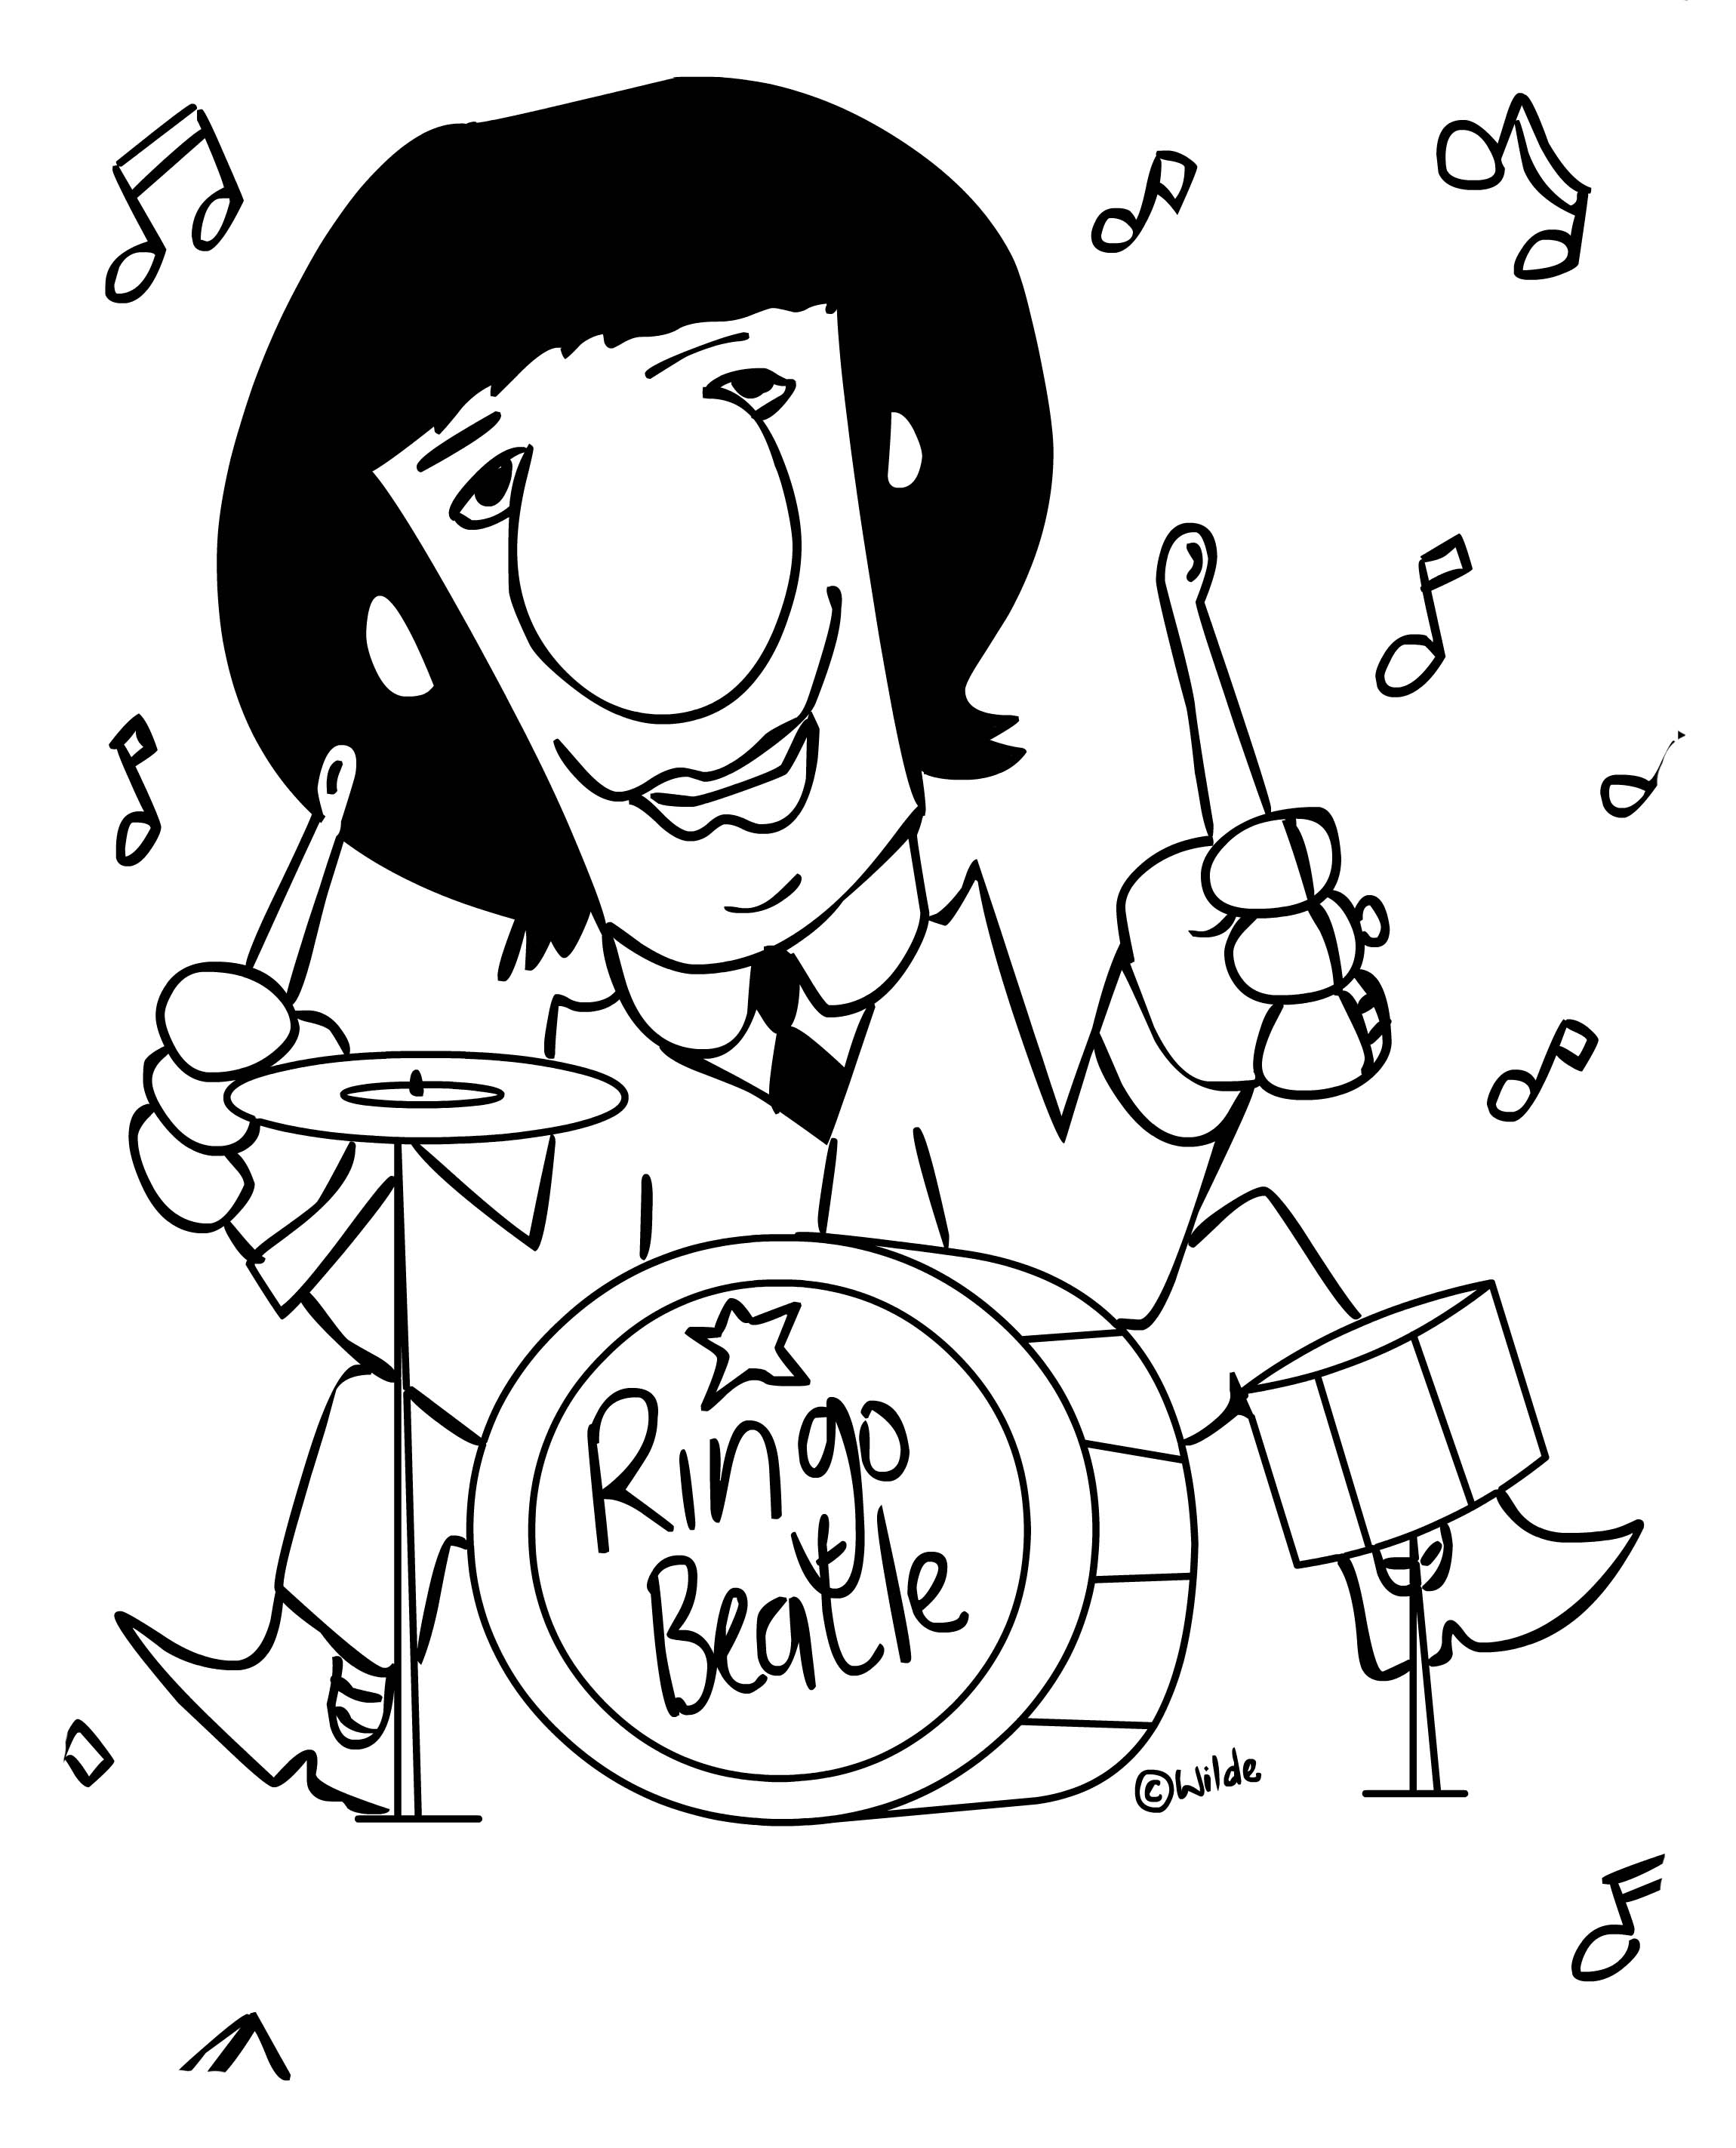 Ringo star caricatura